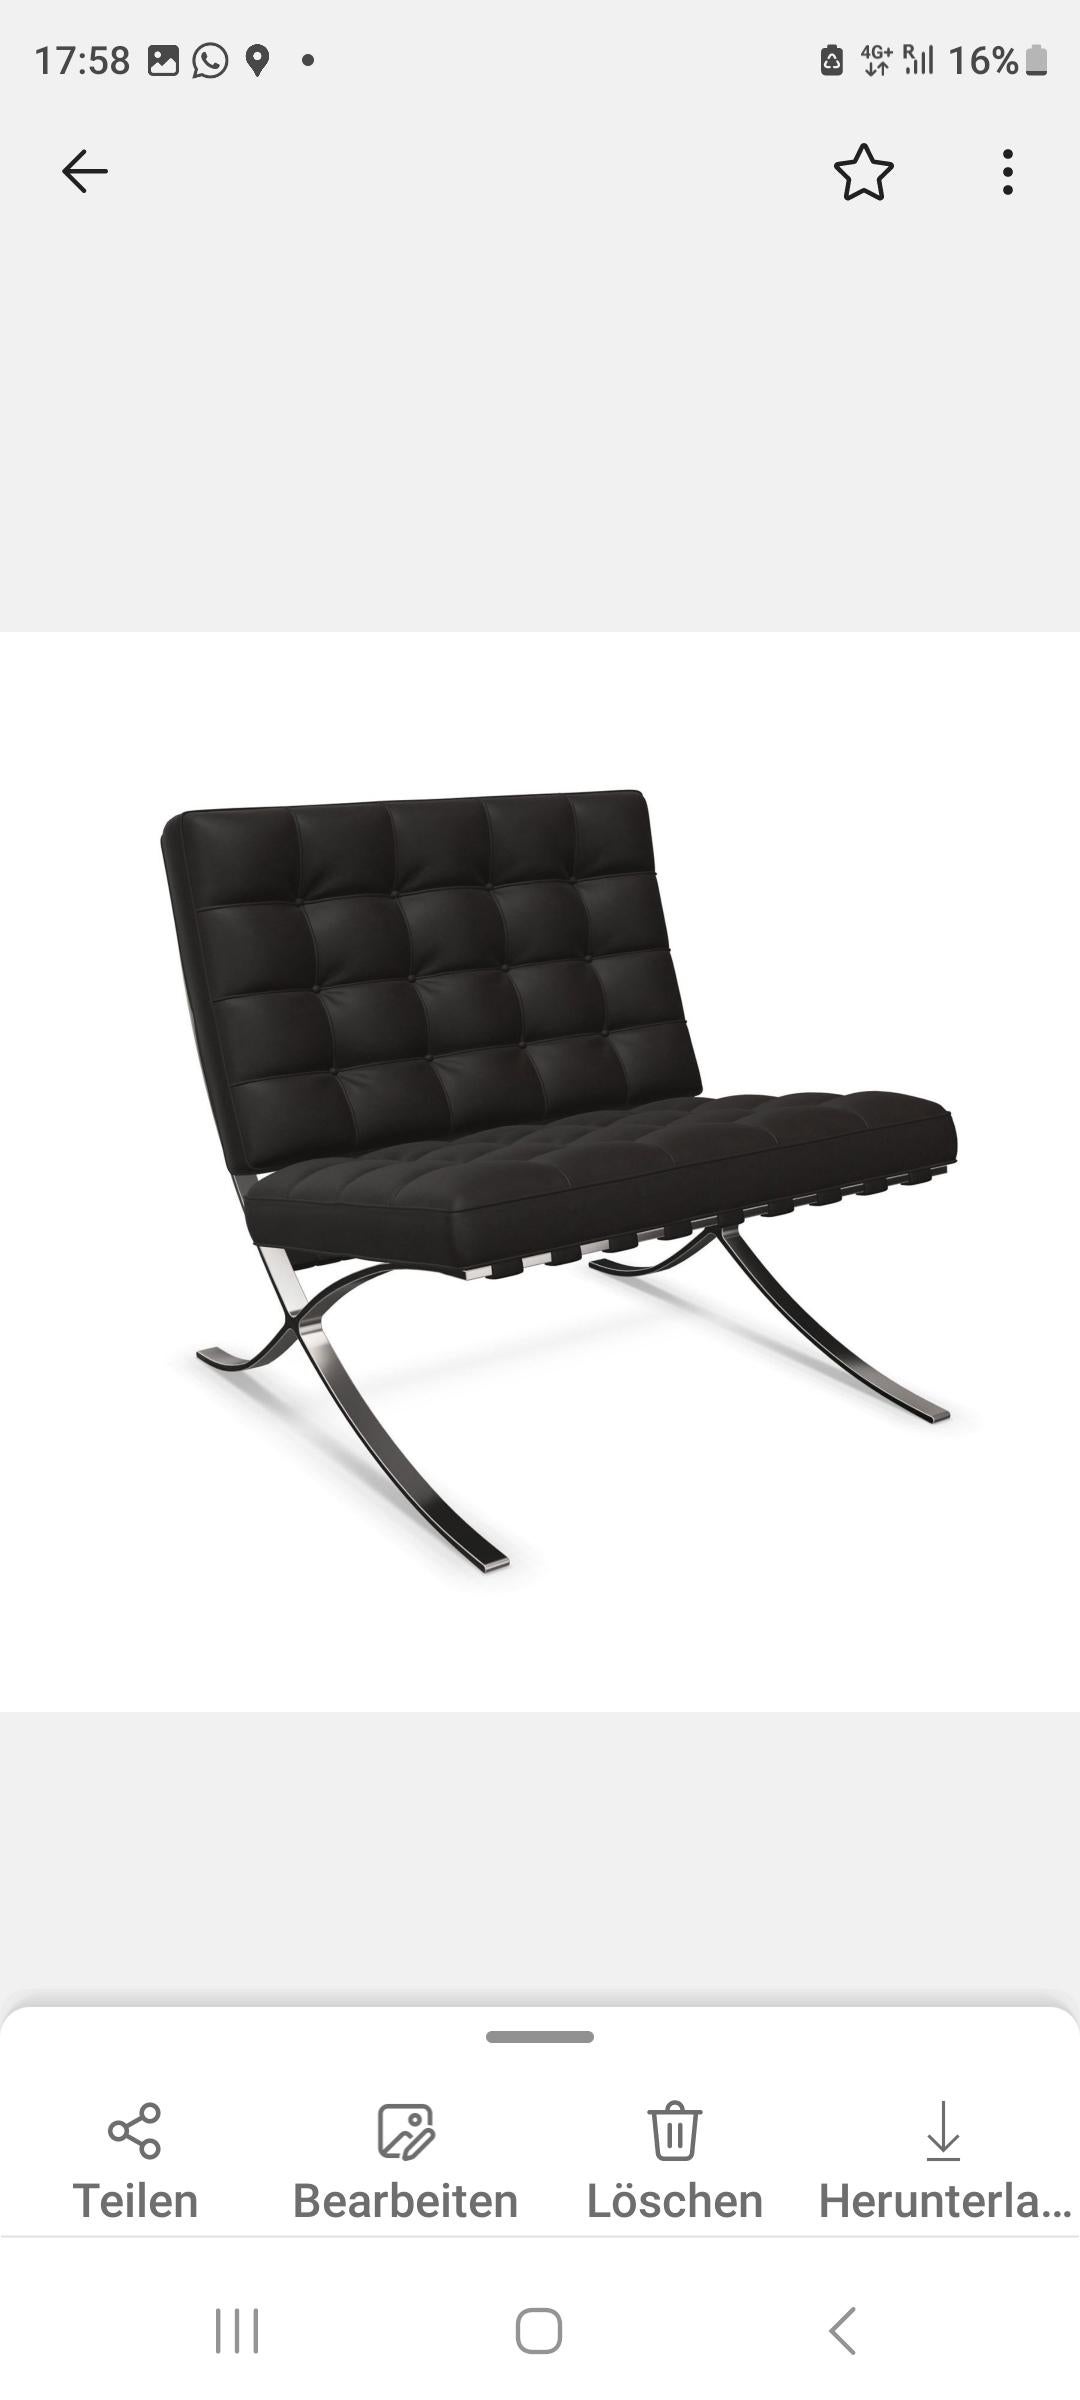 La chaise Barcelona est un modèle de design moderne qui a été conçu par Ludwig Mies van der Rohe et qui a fait l'objet d'une première évaluation par Knoll. 

Denn der Stuhl wurde eigens für den Pavillon der Weimarer Republik in Barcelona entworfen